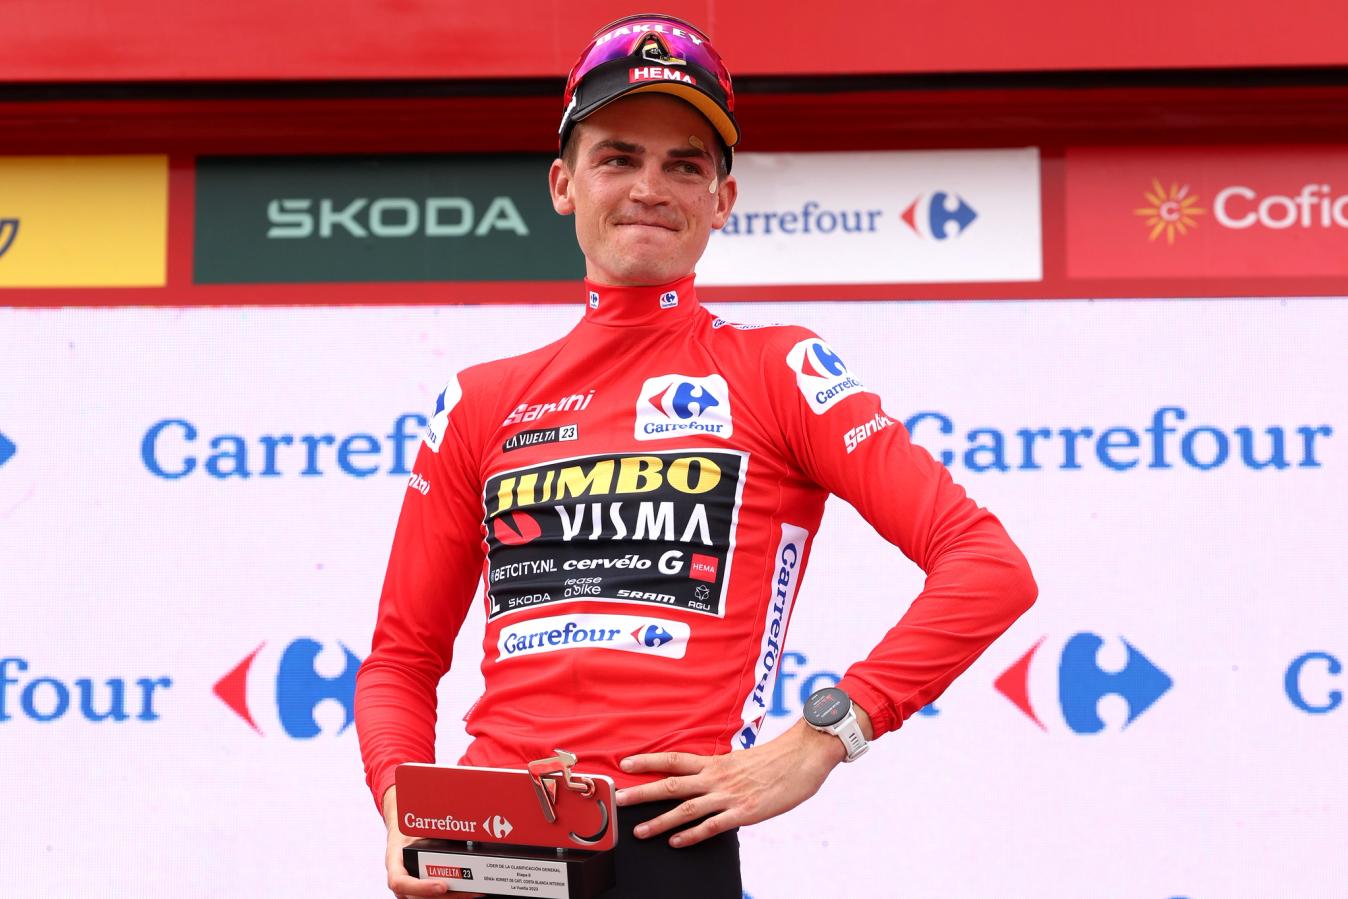 Kuss has become a GC contender at the Vuelta a España